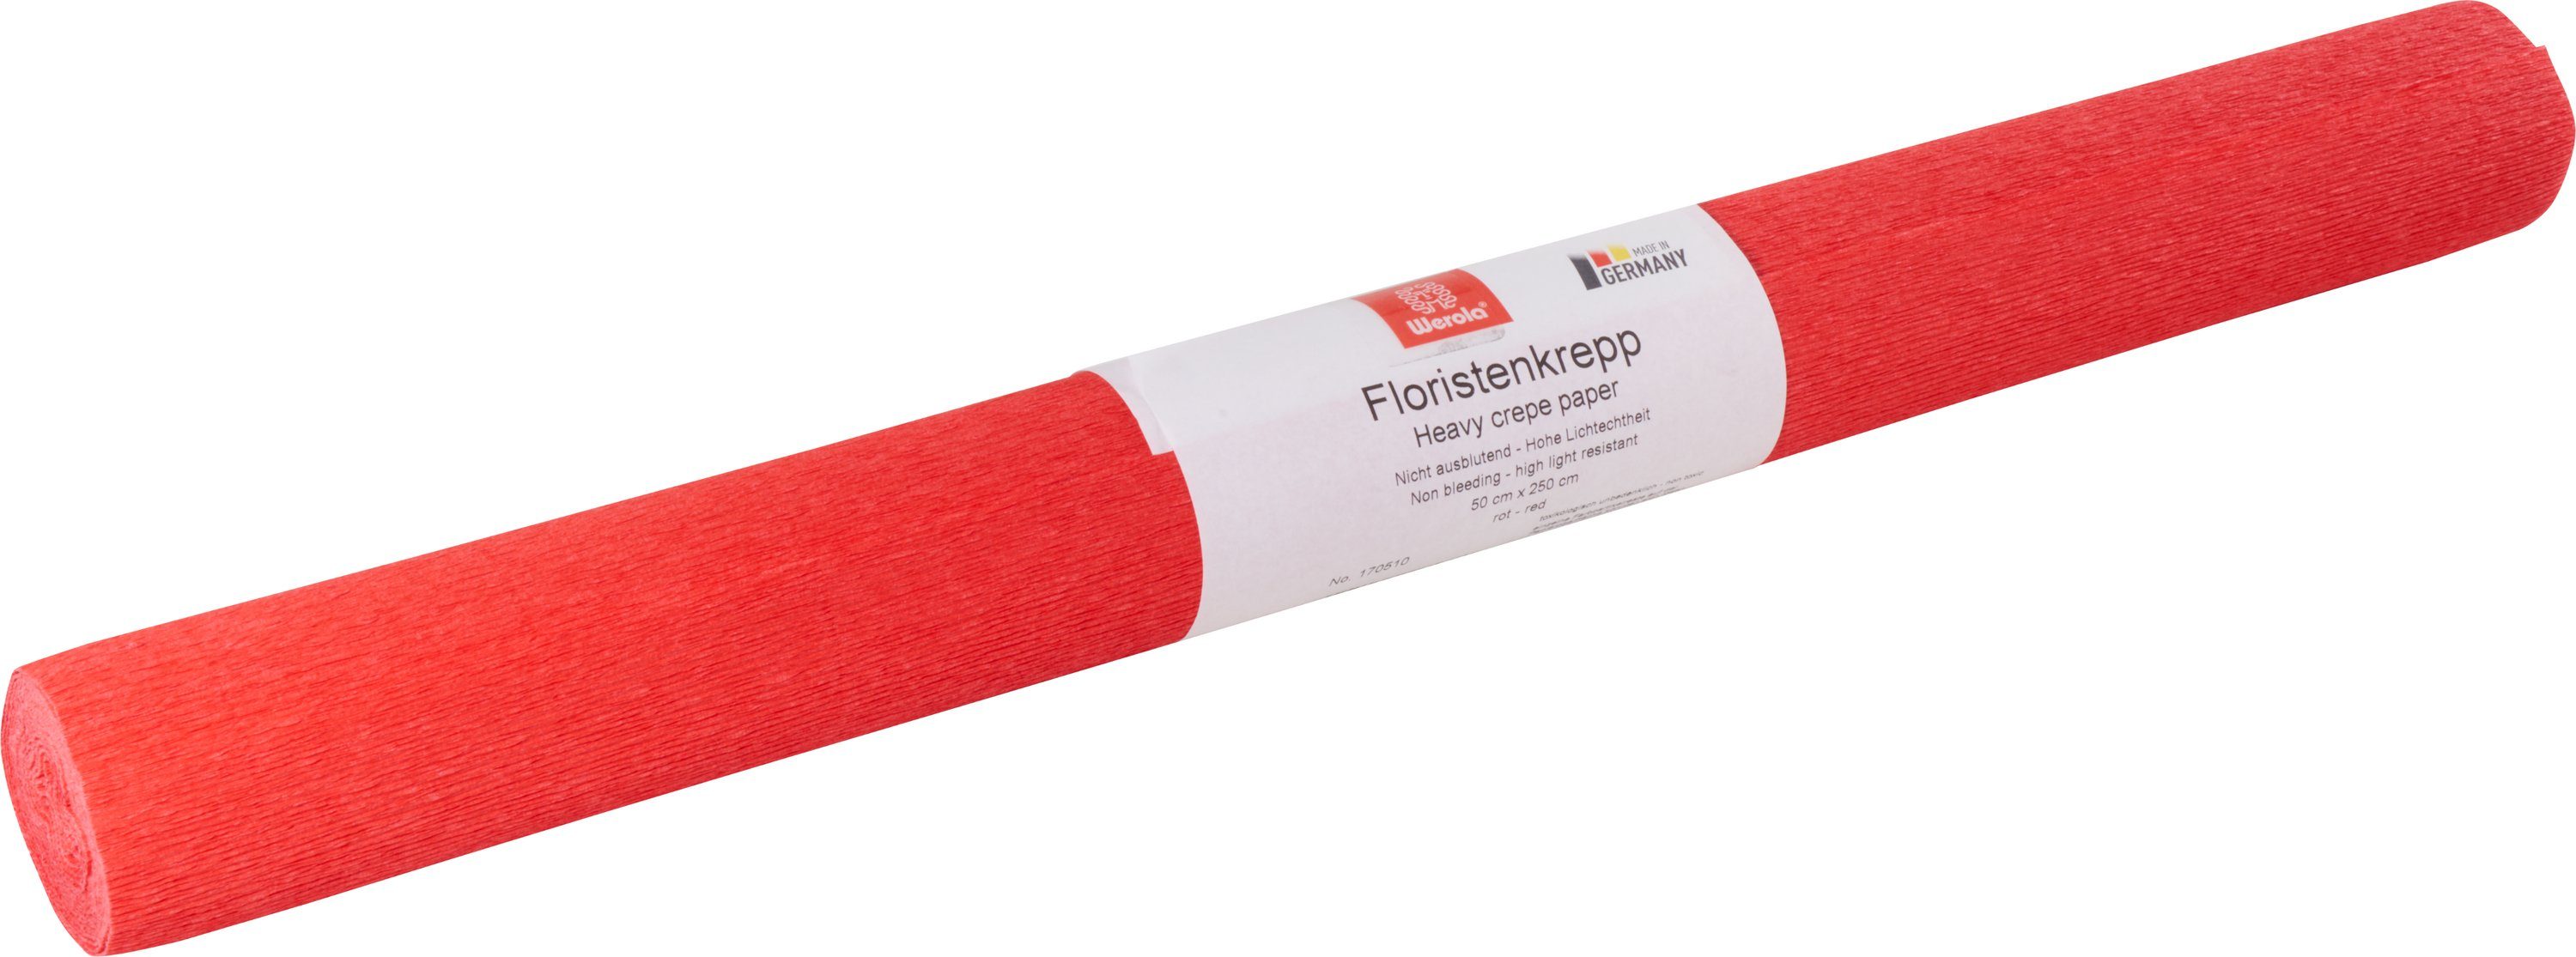 Werola Feinpapier Floristen-Kreppapier, 250 cm x 50 cm, farbfest Rot